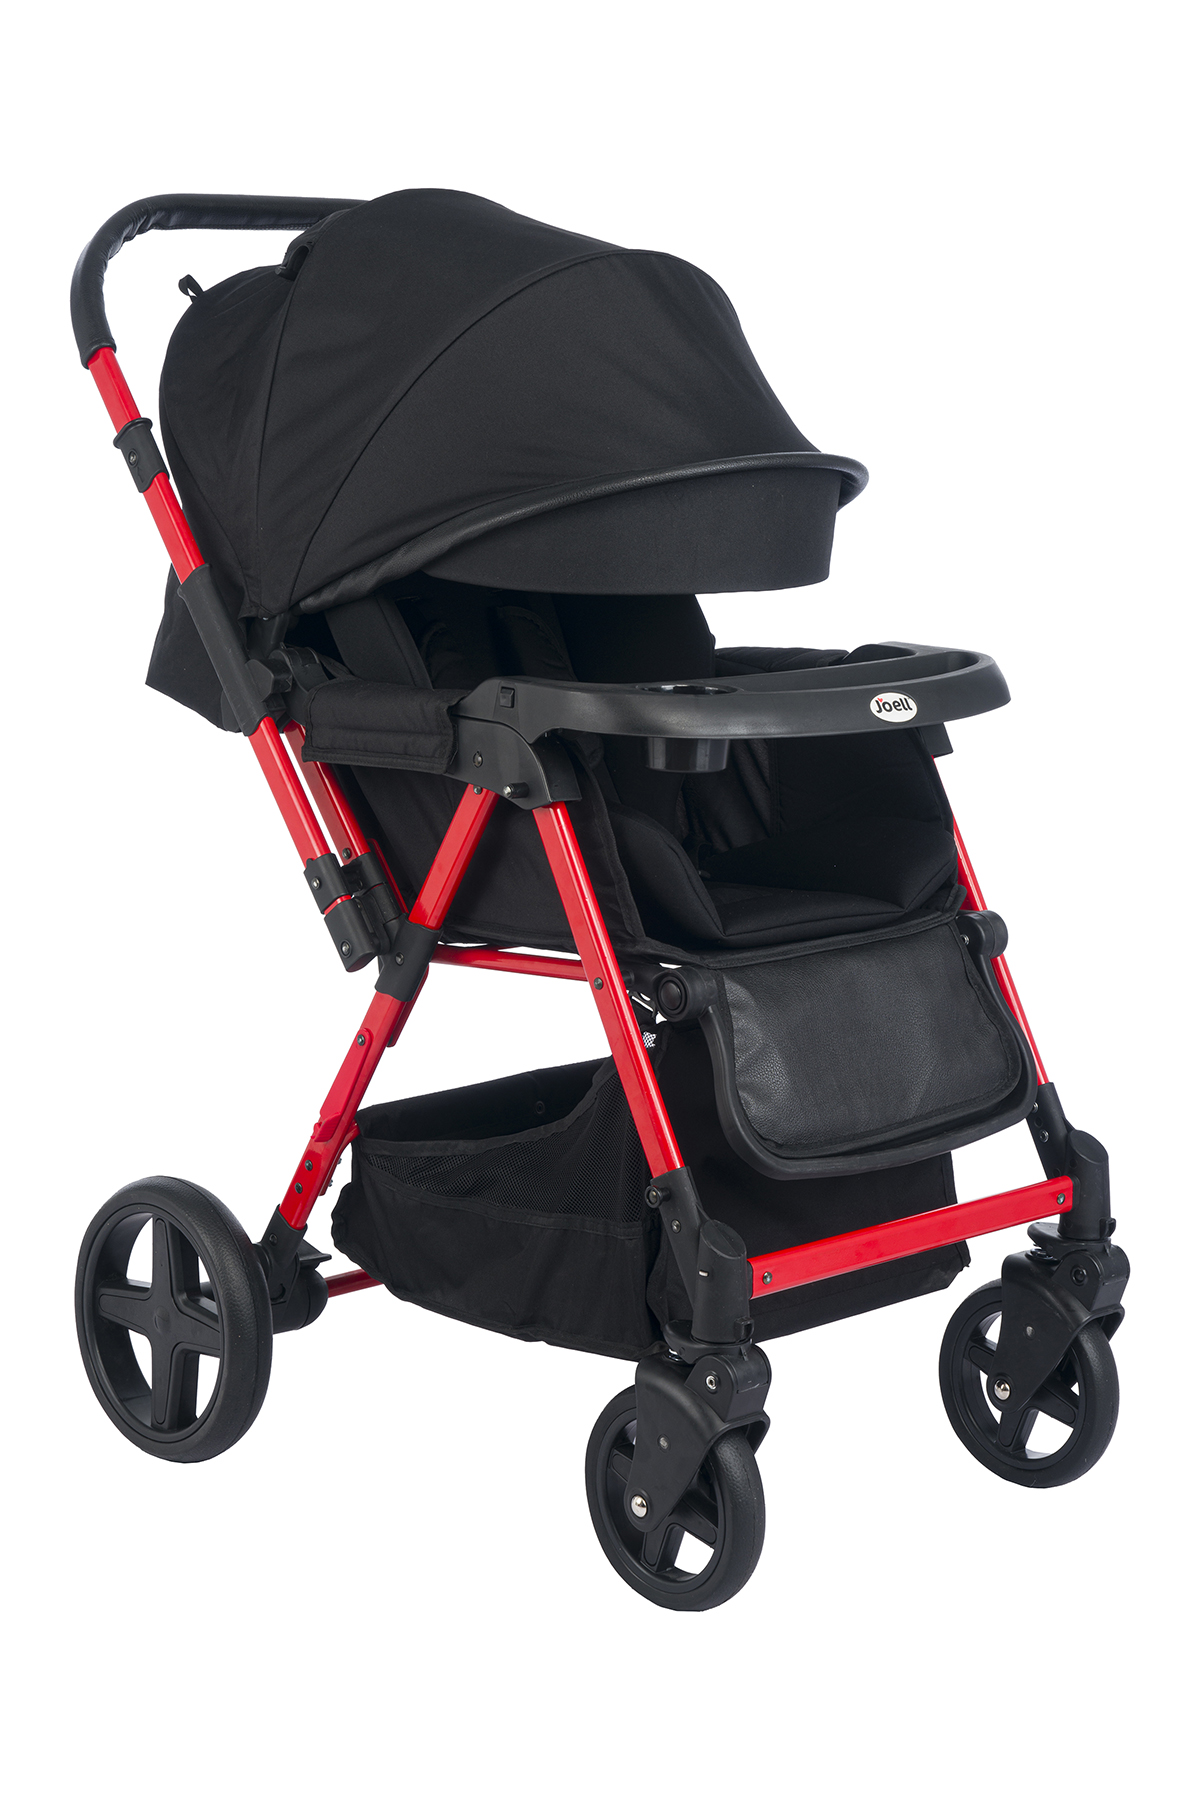 Joell Trendy Çift Yönlü Bebek Arabası Kırmızı Siyah